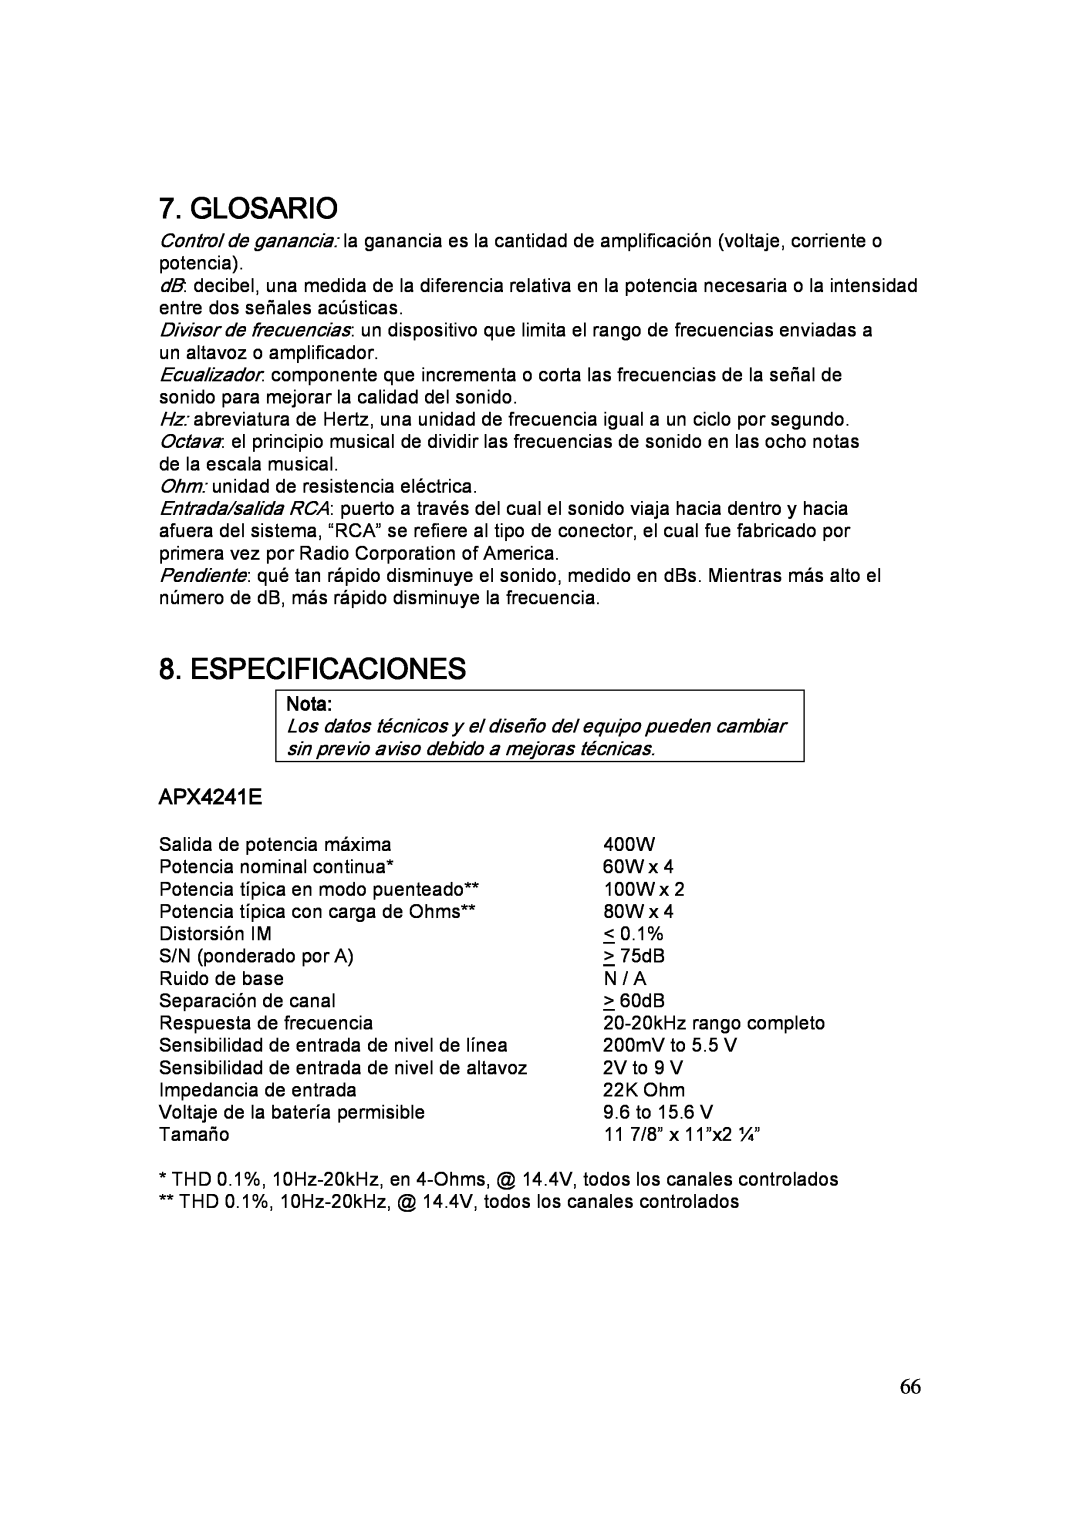 Clarion APX1301E, APX2121E manual Glosario, Especificaciones, APX4241E, Nota 